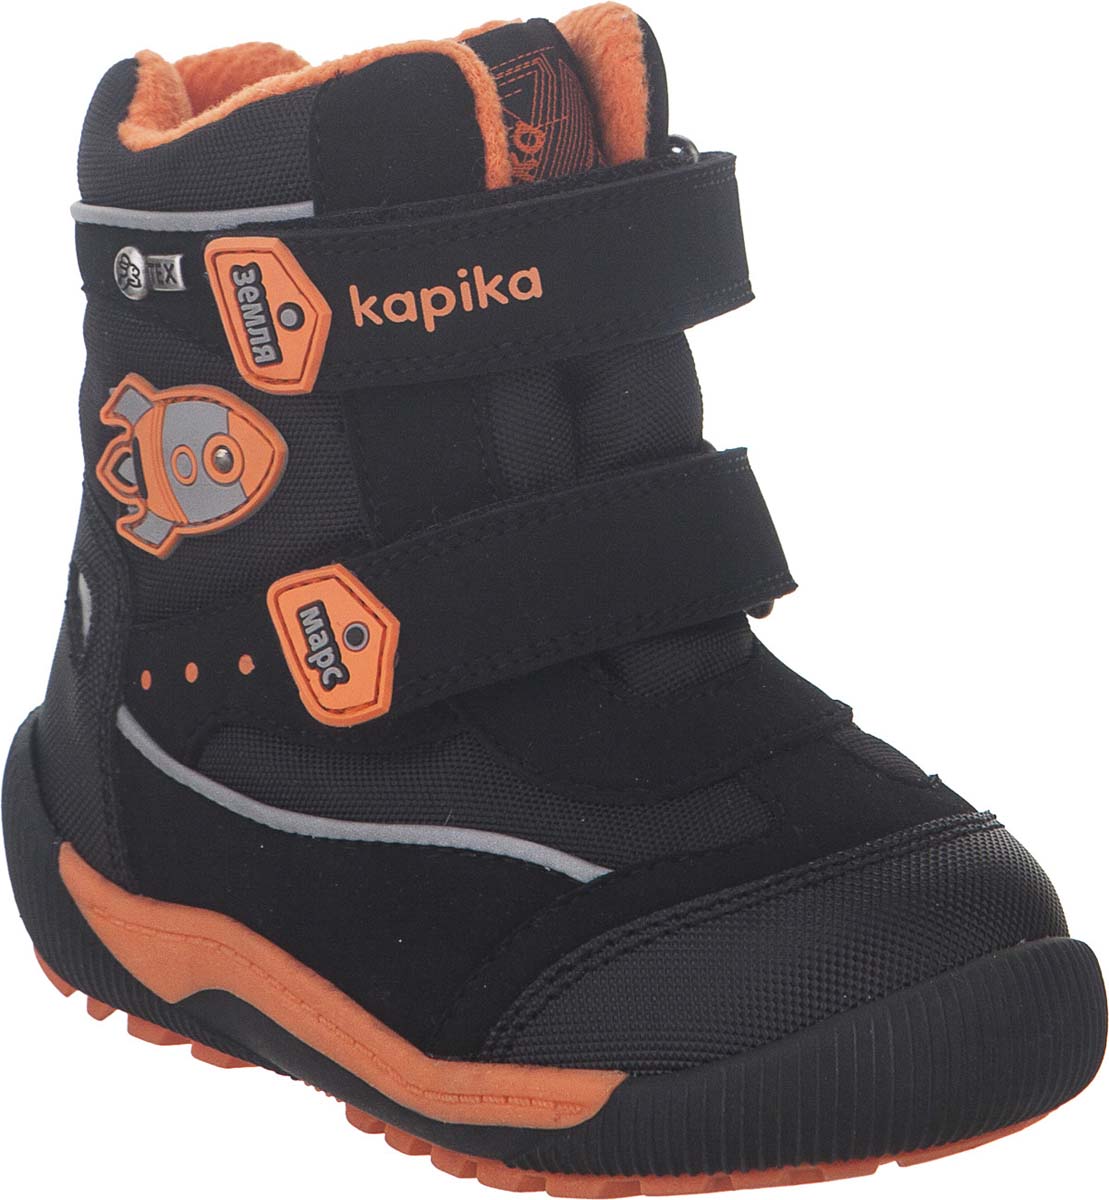 Ботинки для мальчика Kapika KapiTEX, цвет: черный. 41207-1. Размер 23